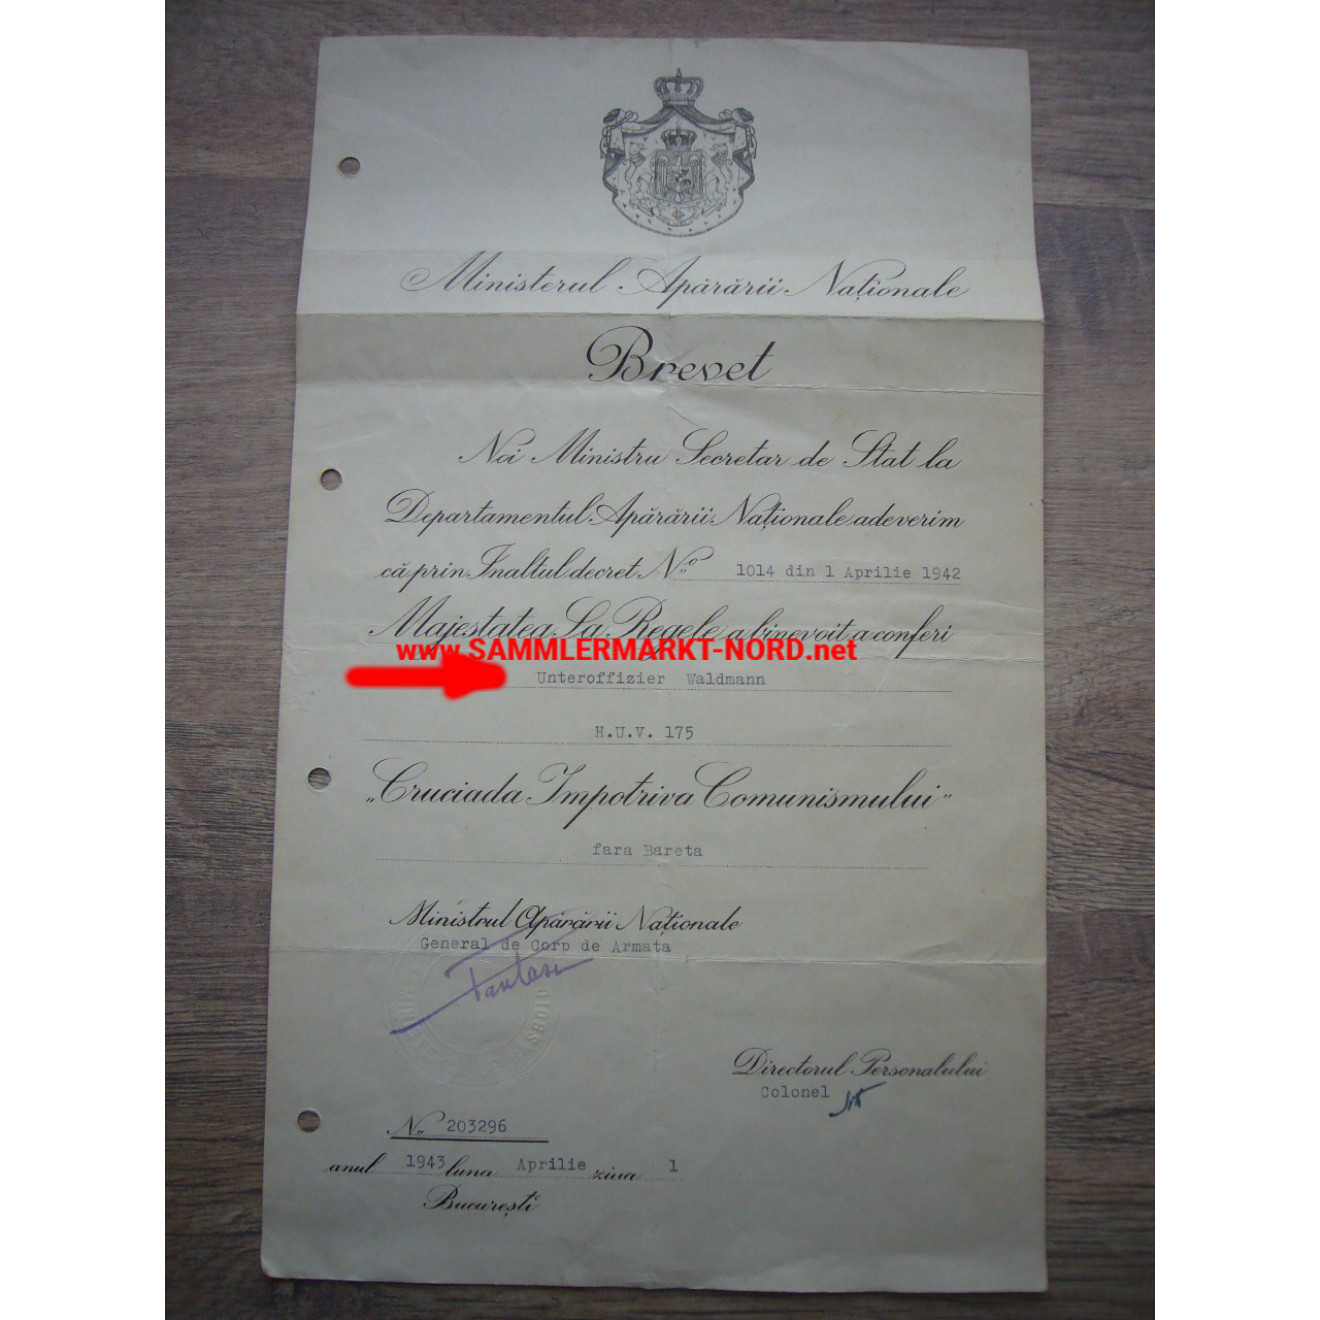 Rumänien - Urkunde für die Medaille Kreuzzug gegen den Kommunismus 1941